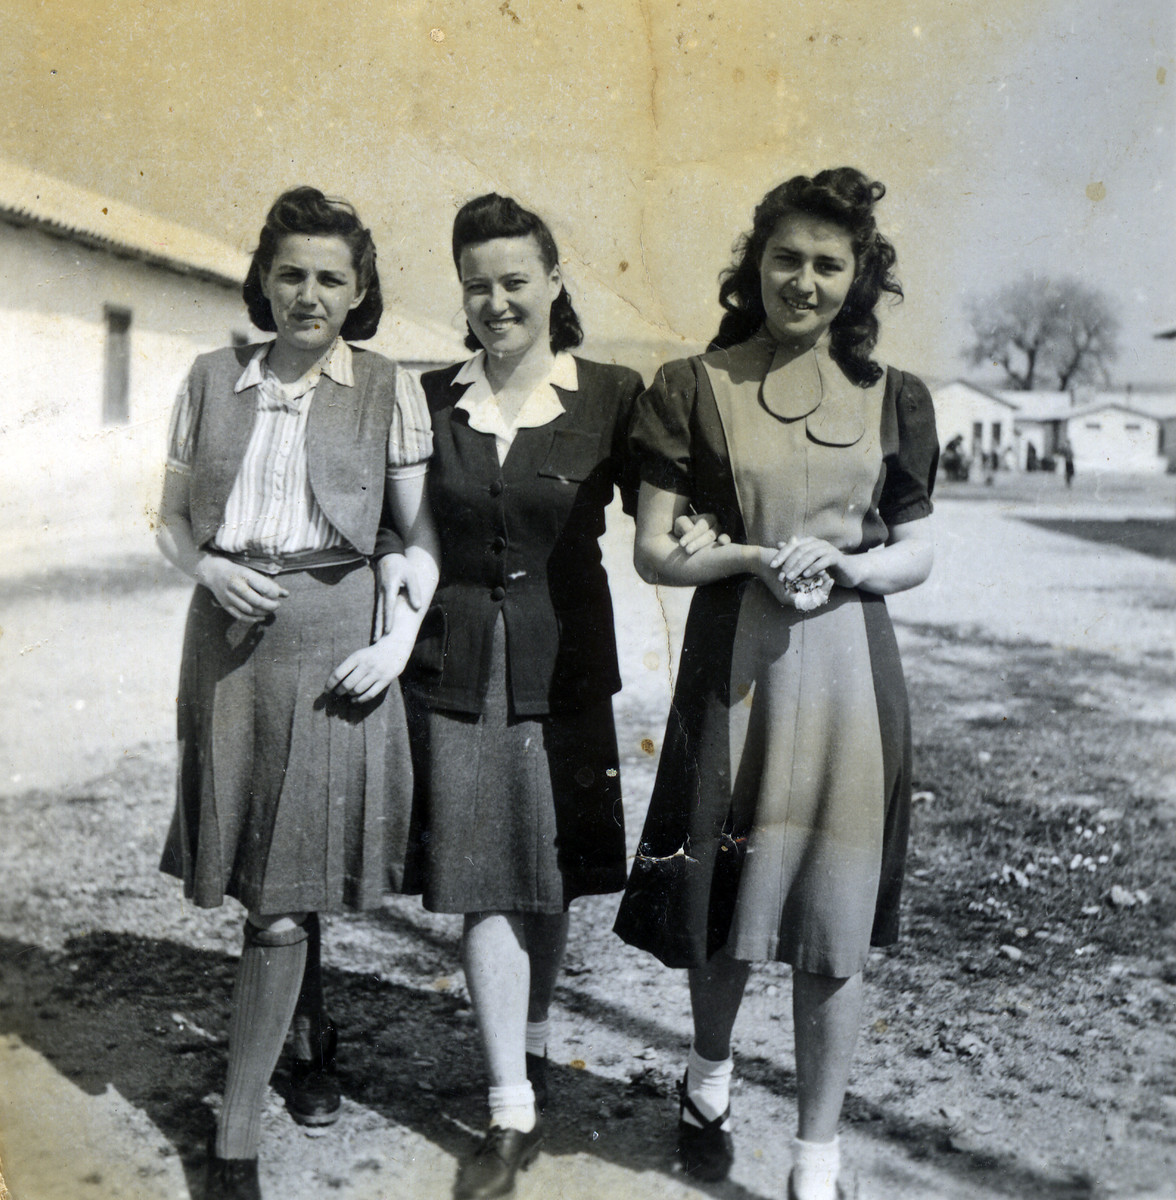 Ruzena Hellinger (nee Blueh) (in the middle) walks with two women in Ferramonti.